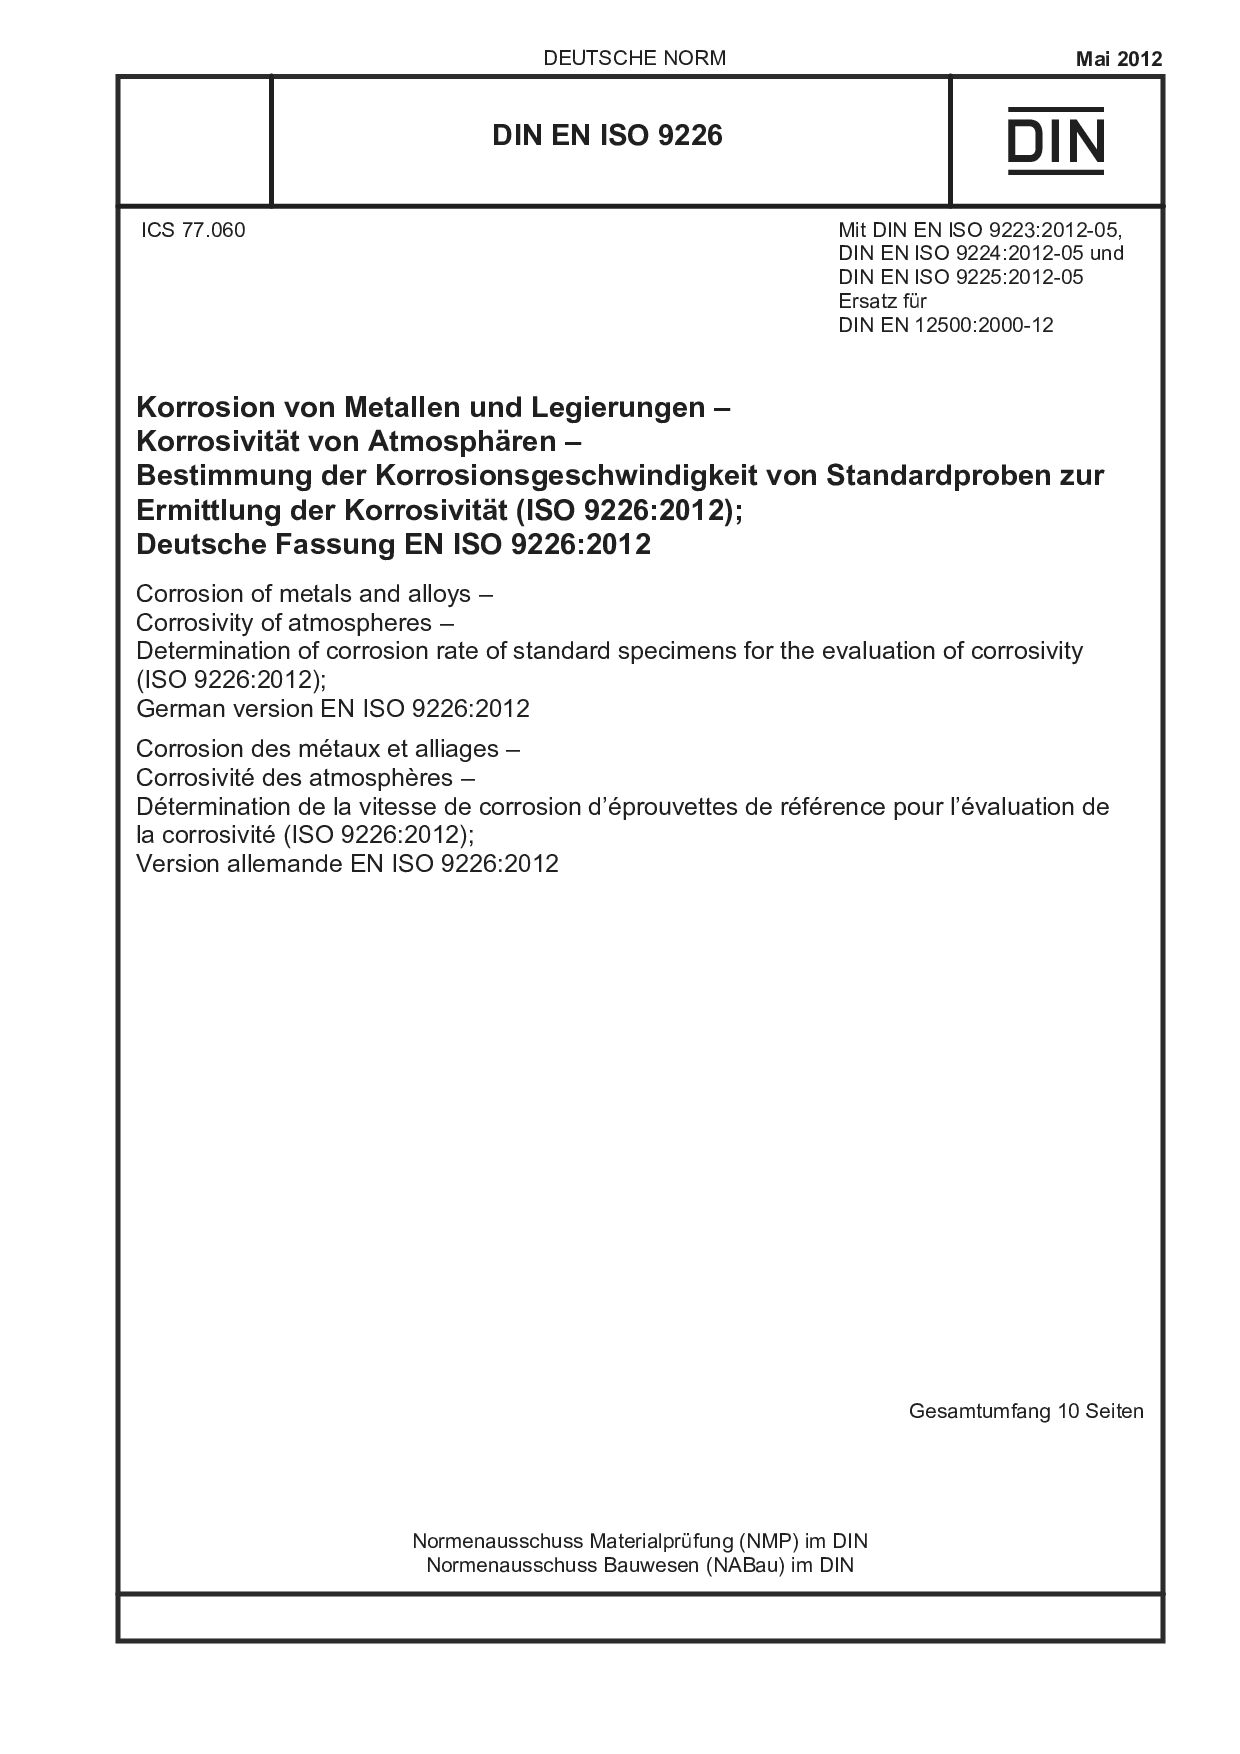 DIN EN ISO 9226:2012-05